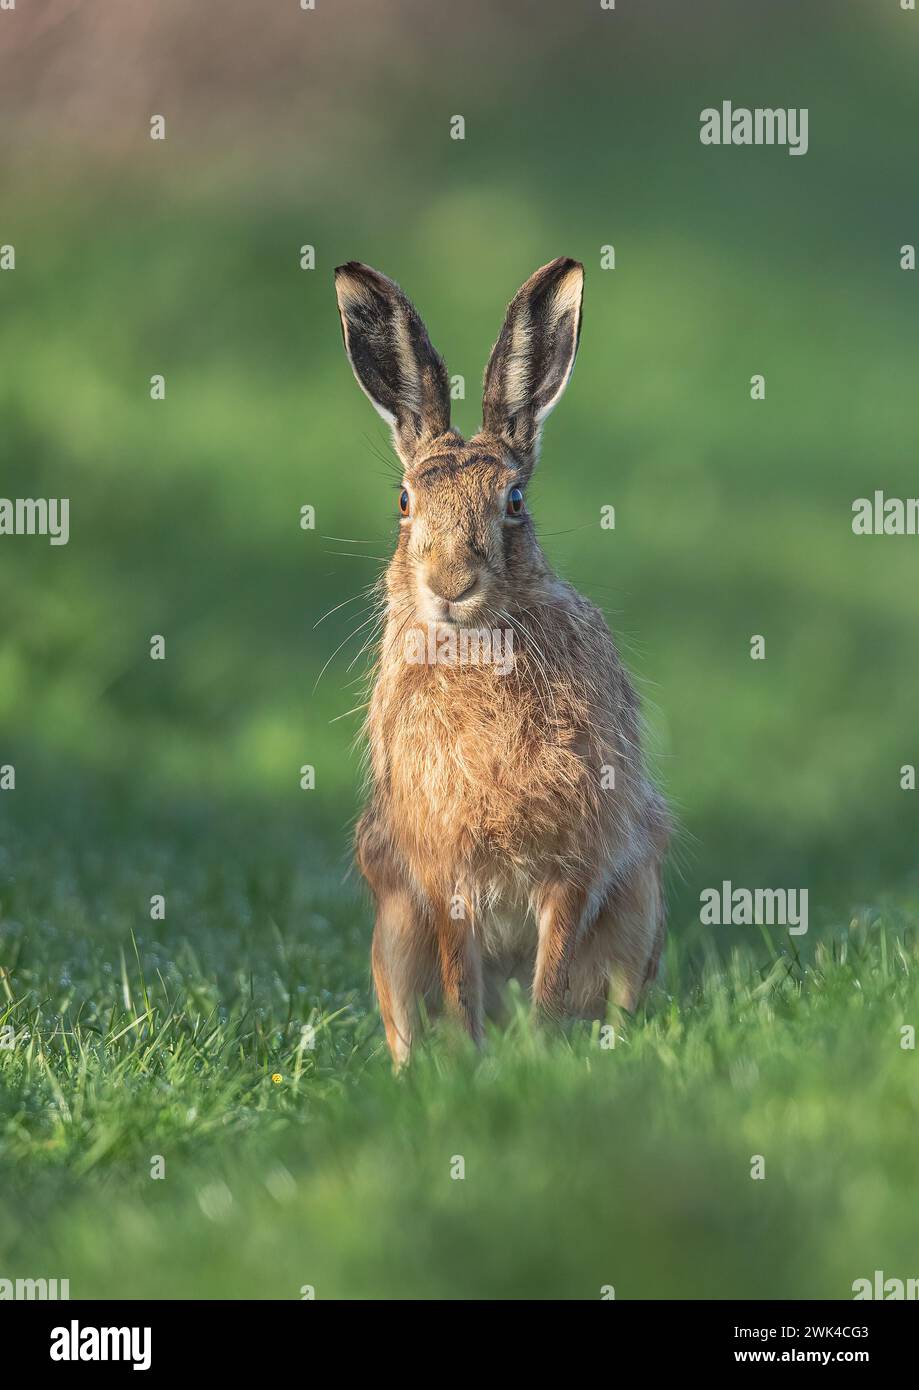 Un primo piano dettagliato di una lepre bruna (Lepus europaeus) con orecchie grandi, che guarda direttamente verso la fotocamera seduta su un margine di erba .Suffolk, Regno Unito. Foto Stock